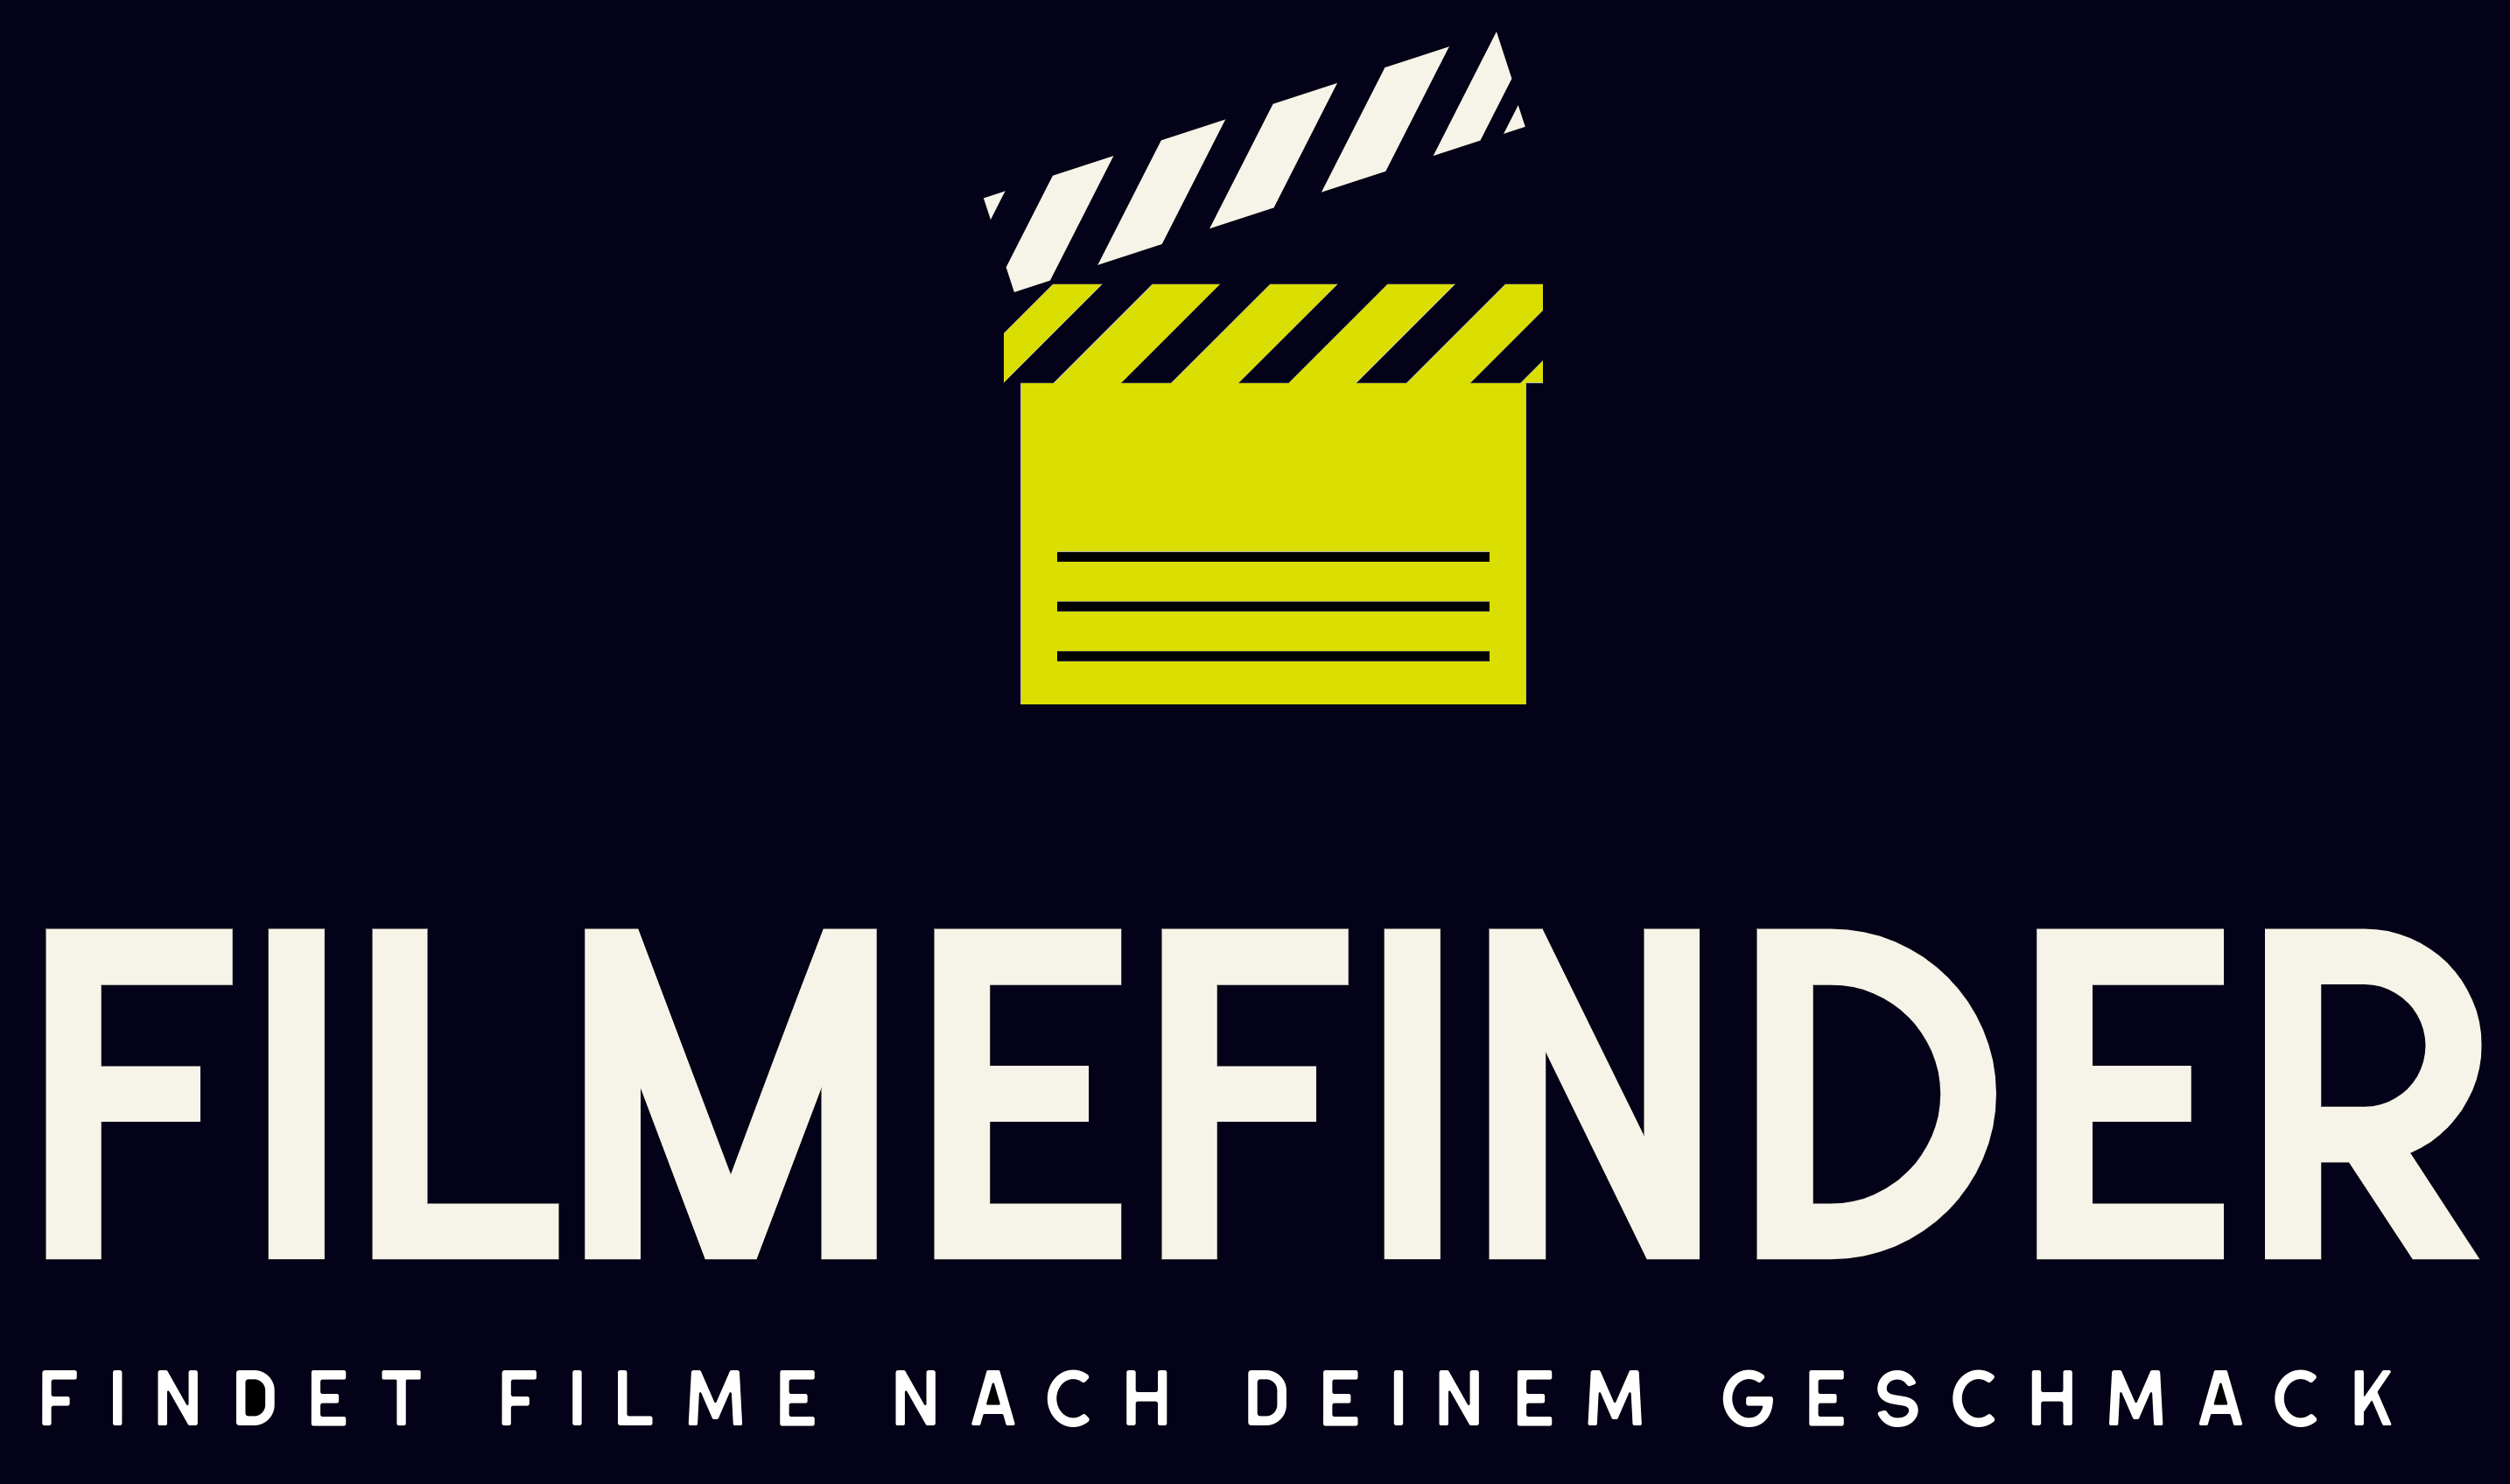 Filmefinder Logo